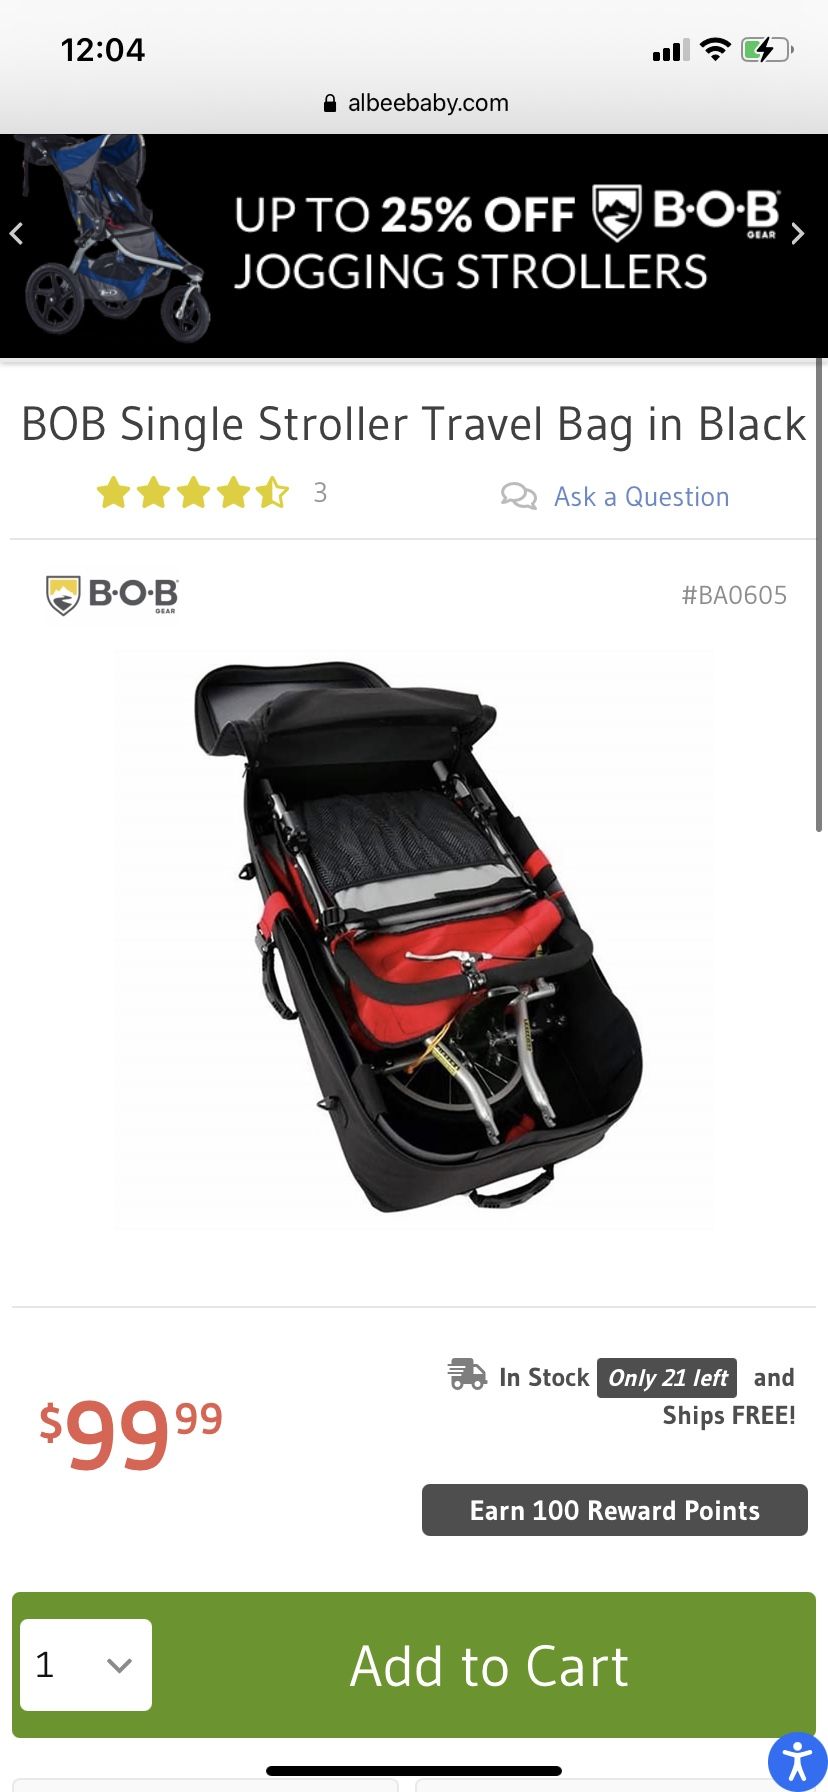 New BOB Single Stroller Travel Bag in Black